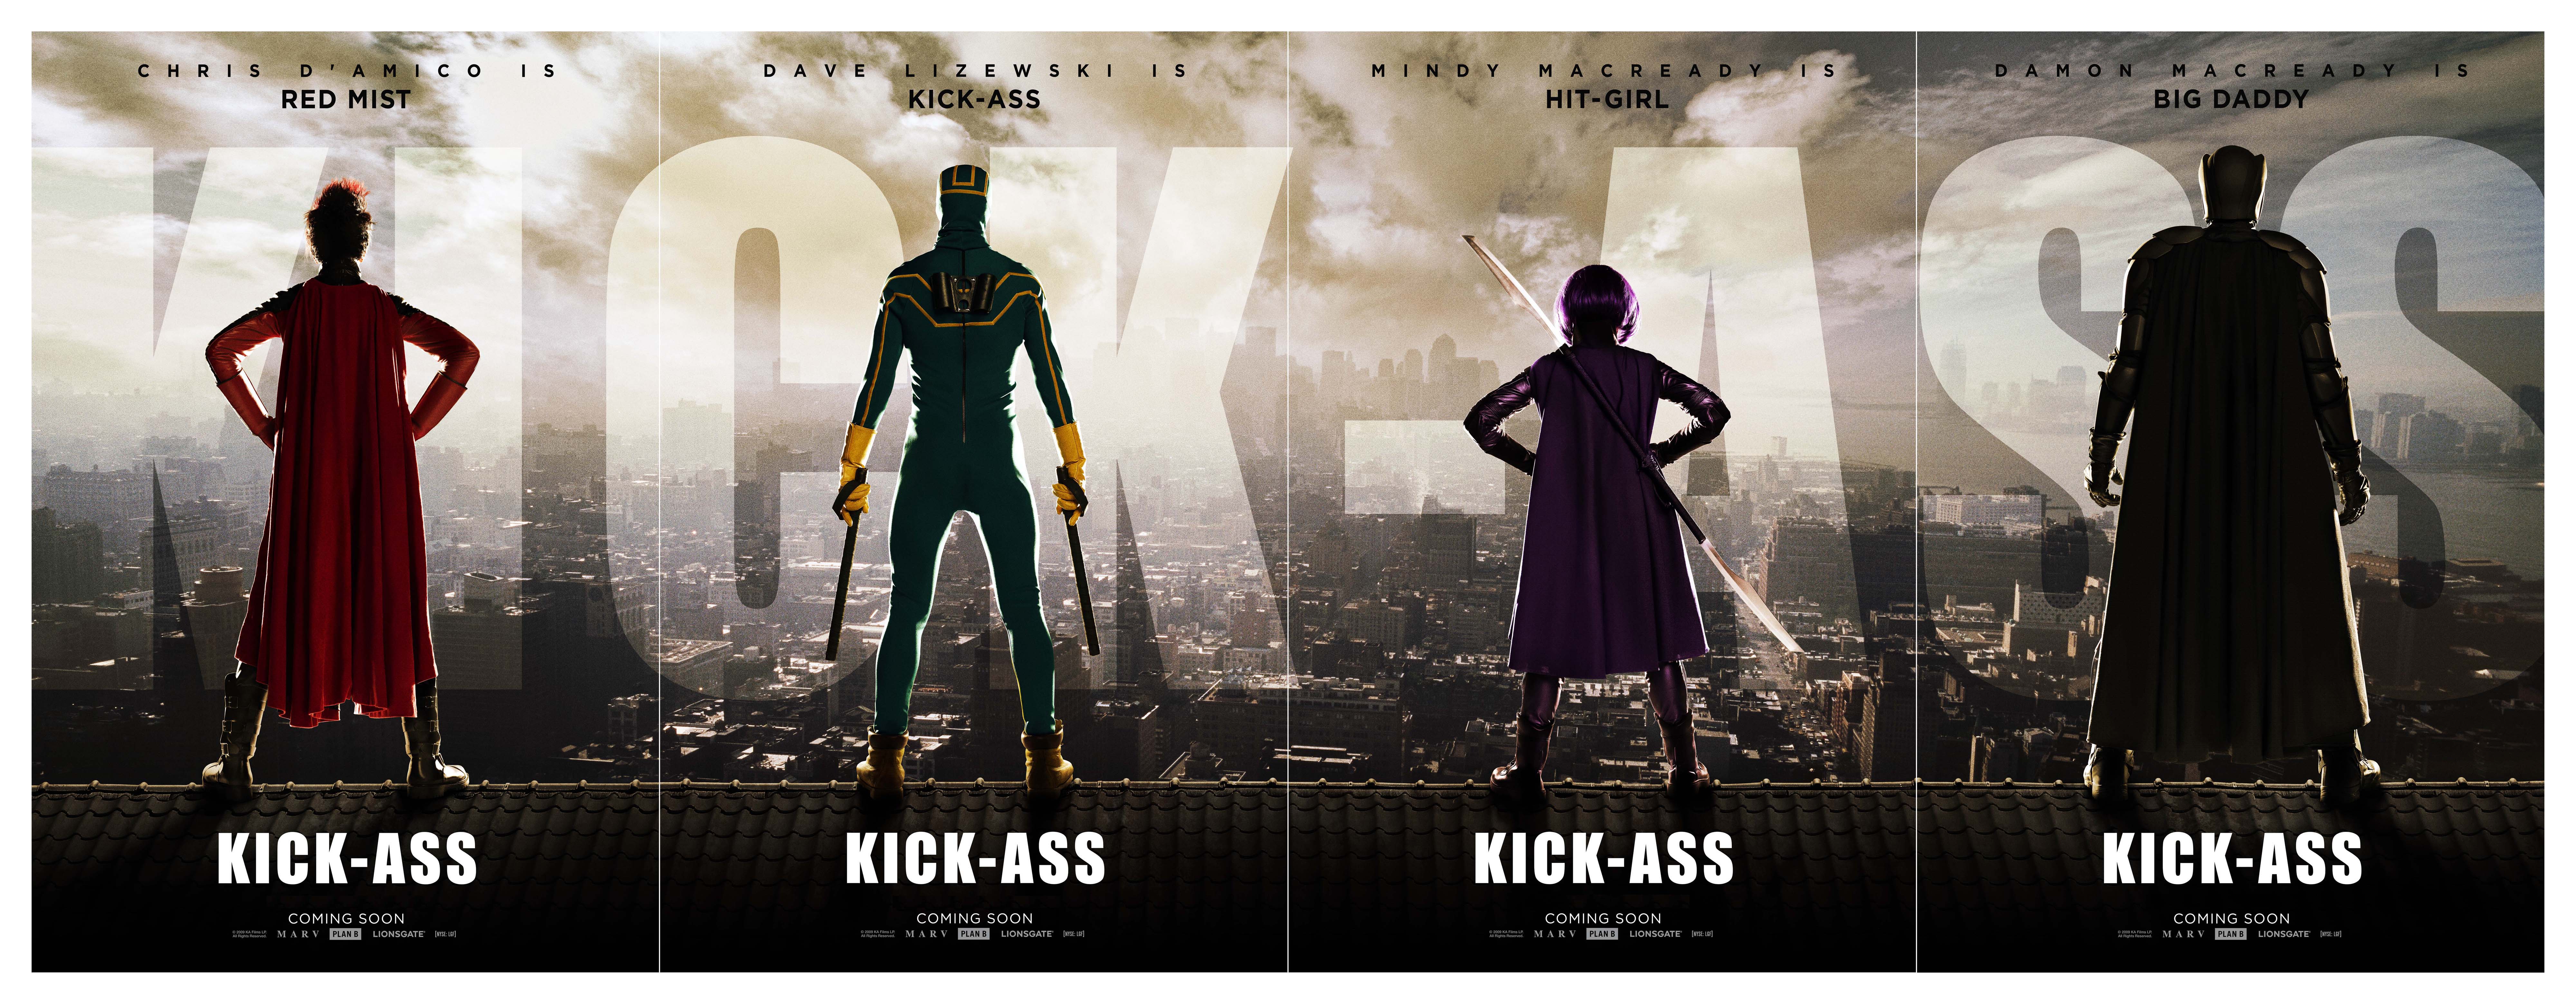 movies, Kick-Ass, movie posters - desktop wallpaper